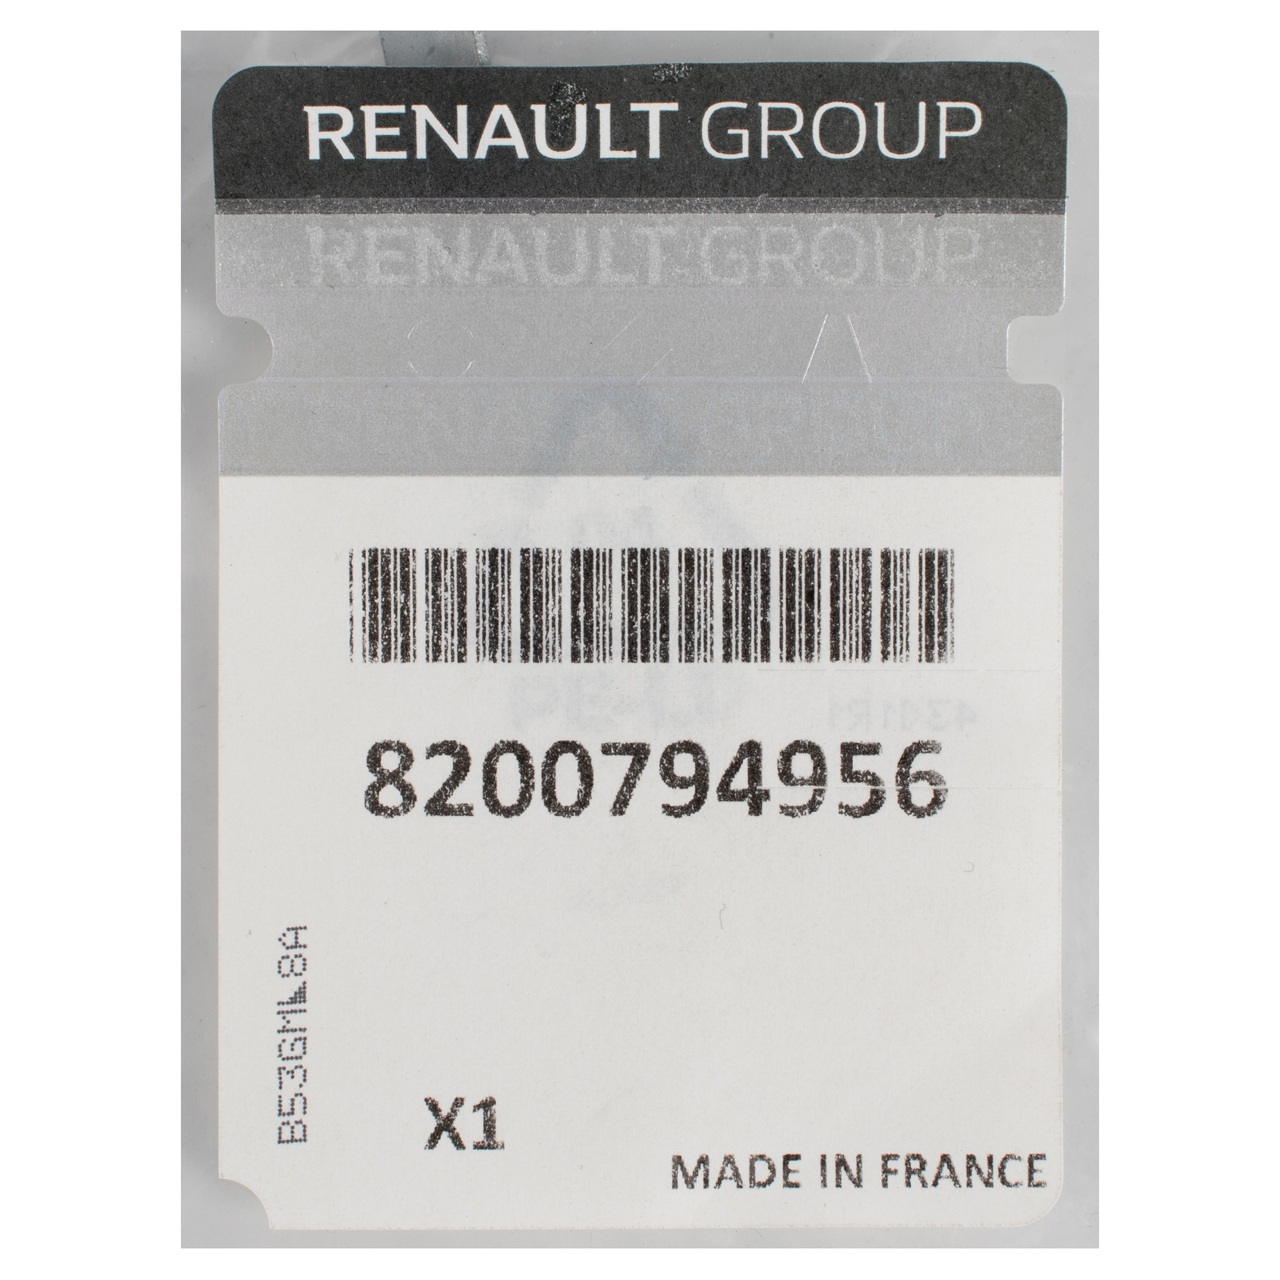 ORIGINAL Renault Clip Klammer Getriebeelement Schaltgetriebe Trafic 2 8200794956